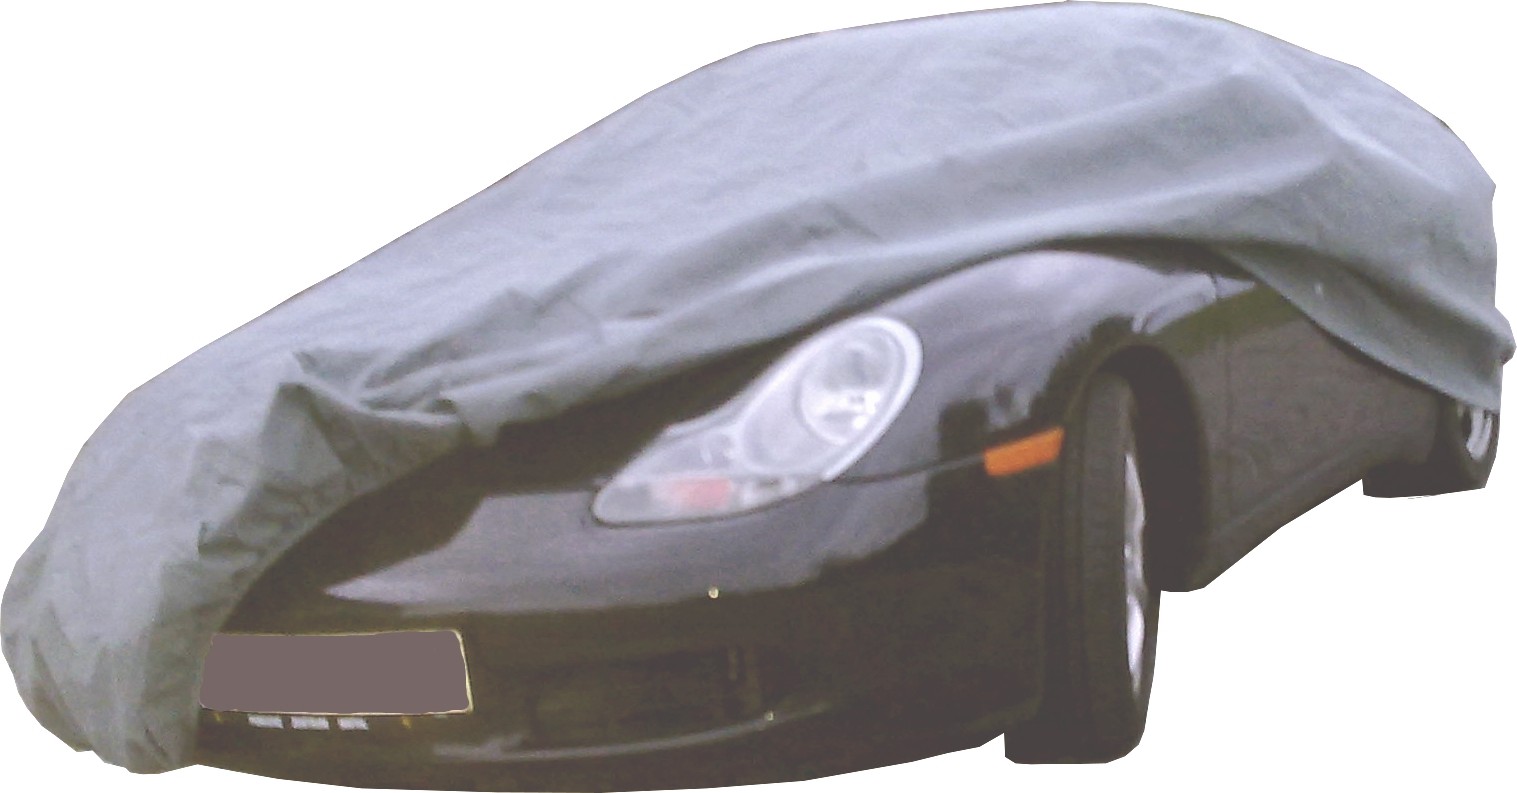 Autoabdeckungen und Schutzhüllen von Car-e-Cover. Autoabdeckungen und  Schutzhüllen von Car-e-Cover